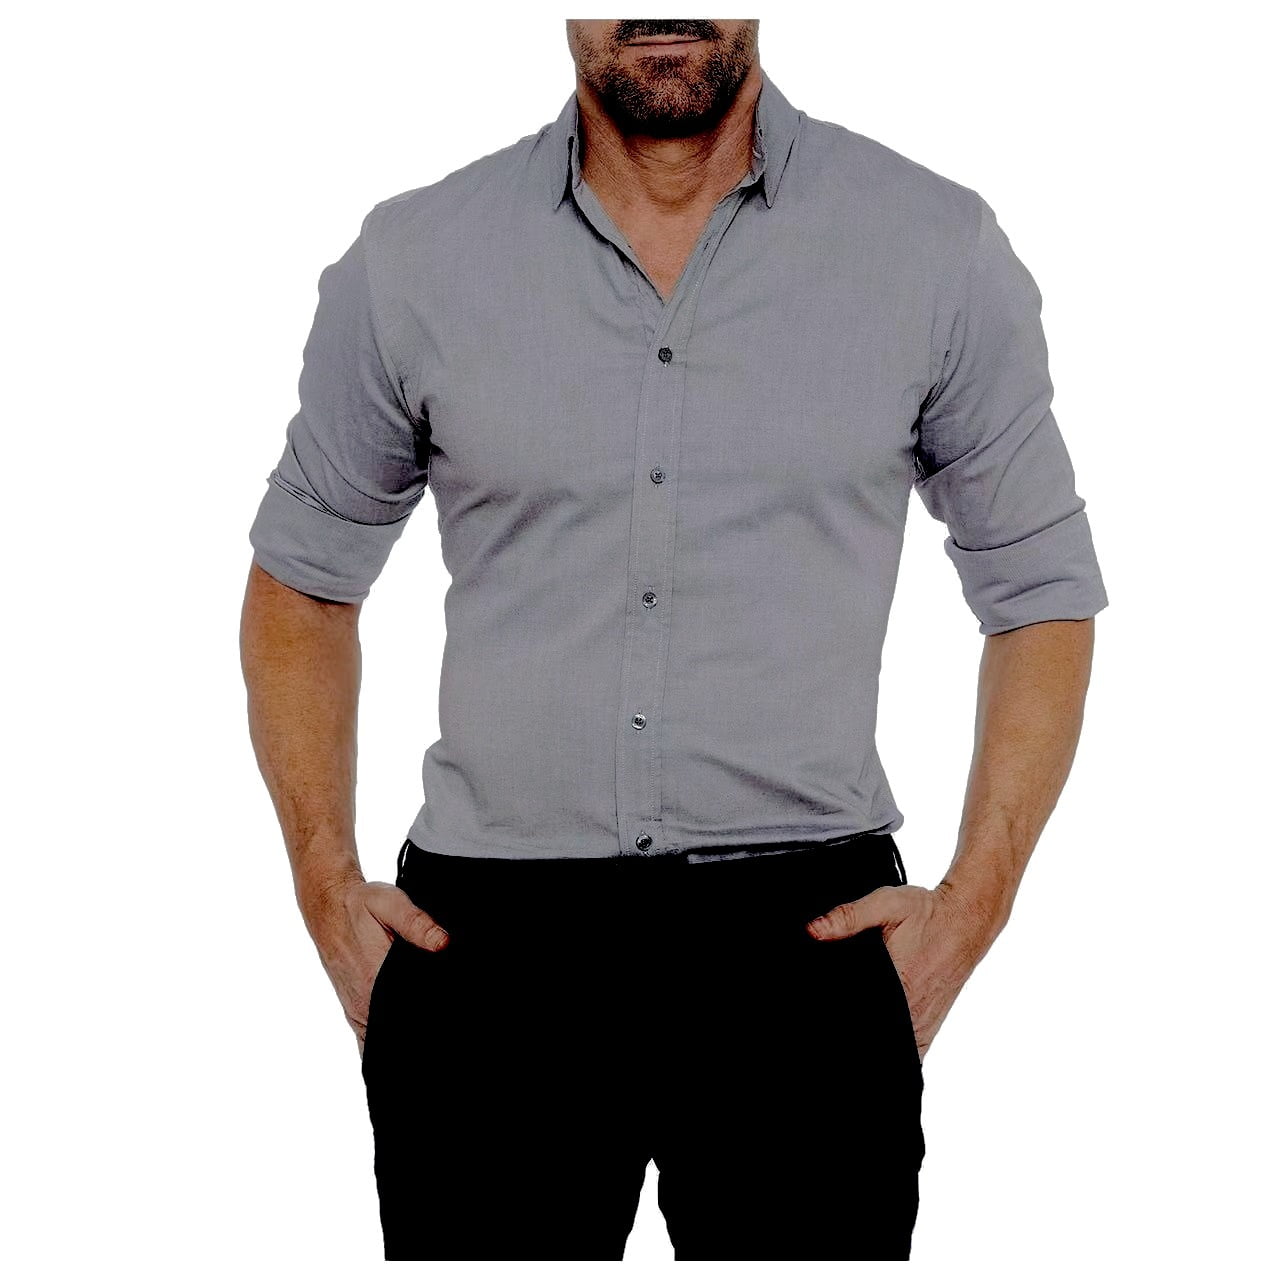 Plus Size Men's Zip Shirt Hidden Zipper Fake Buttons Oxford Cotton ...